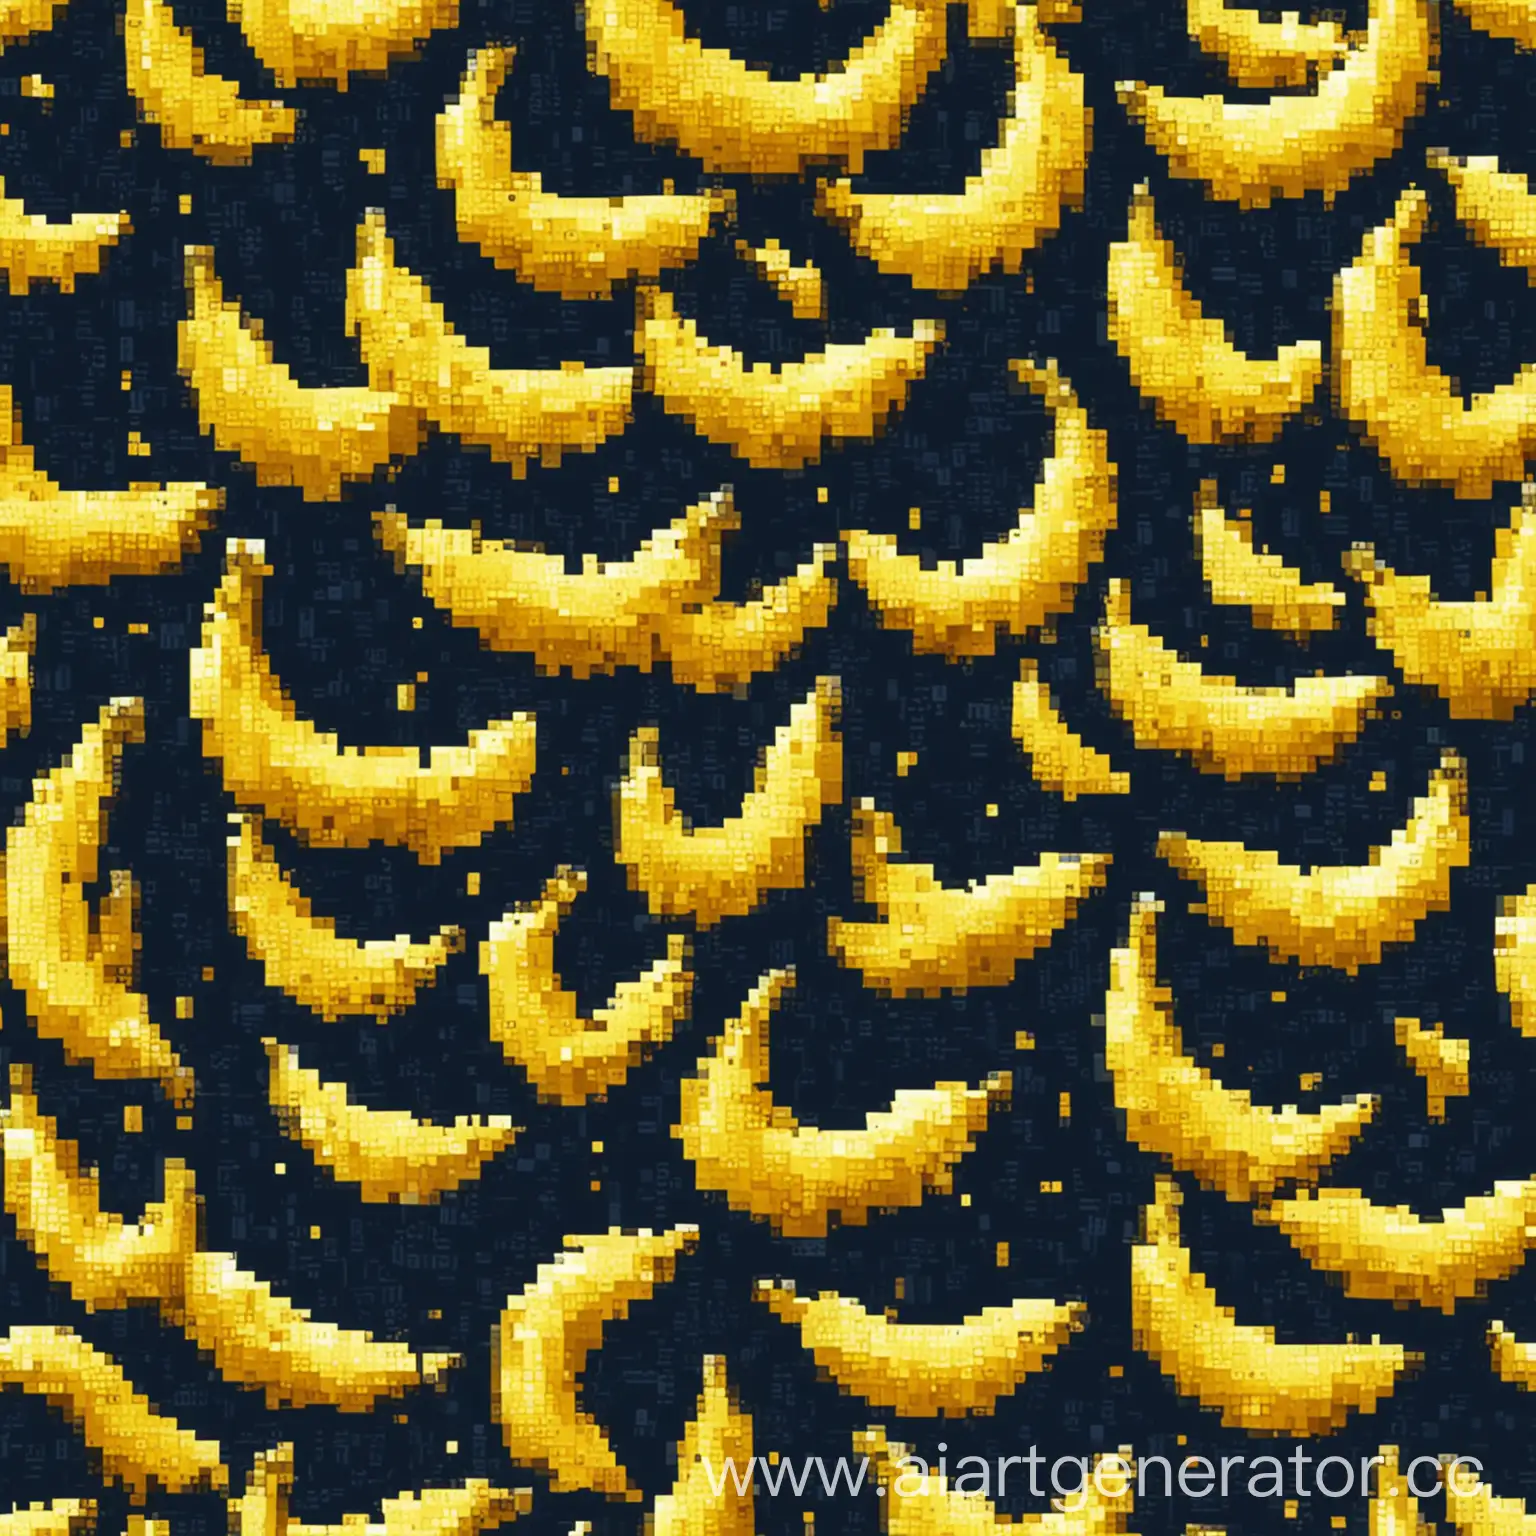 Pixelated-Banana-on-Vibrant-Blue-Background